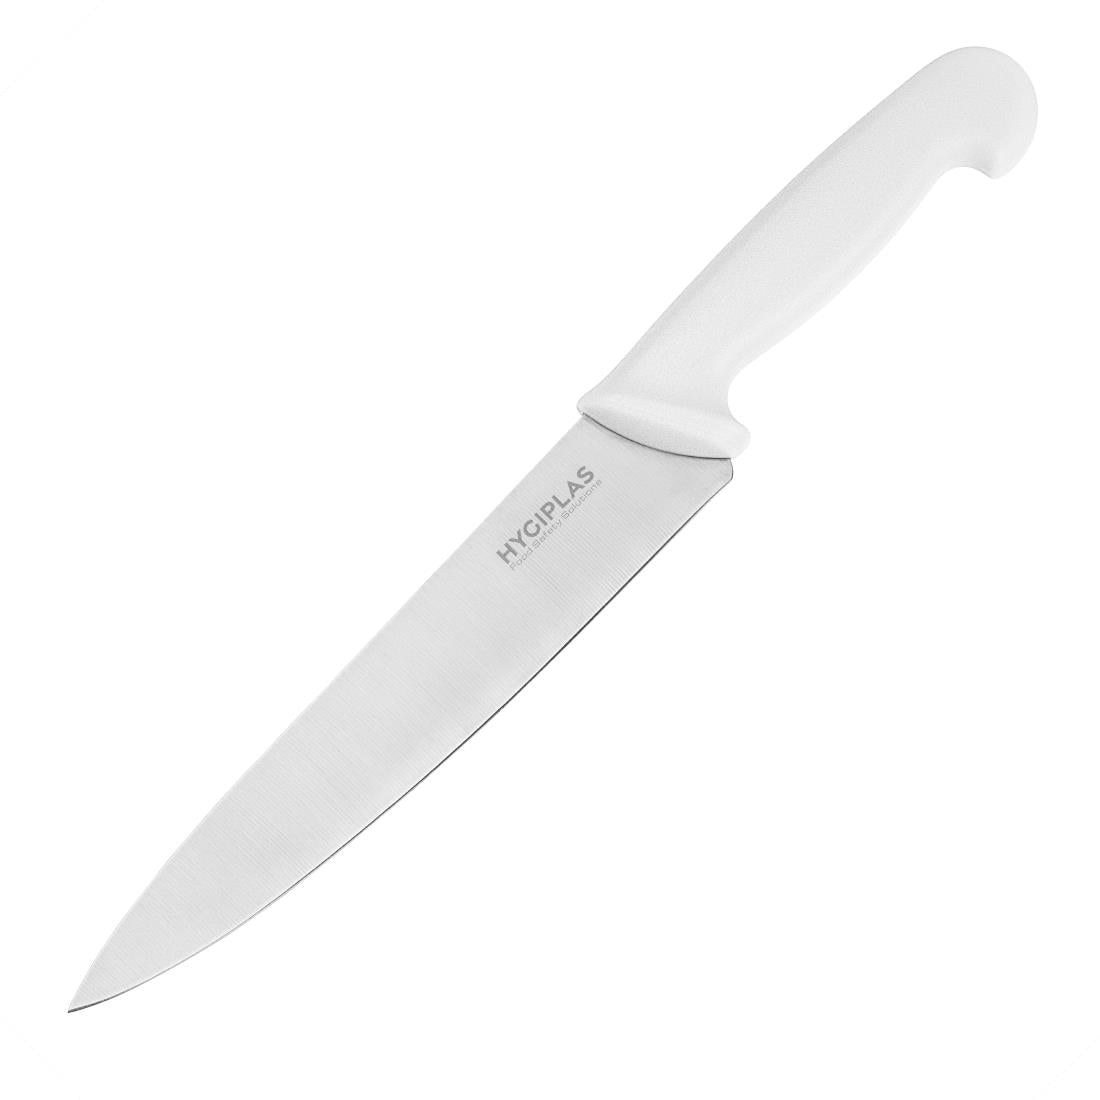 FX113 Hygiplas Cooks Knife White 21.6cm JD Catering Equipment Solutions Ltd